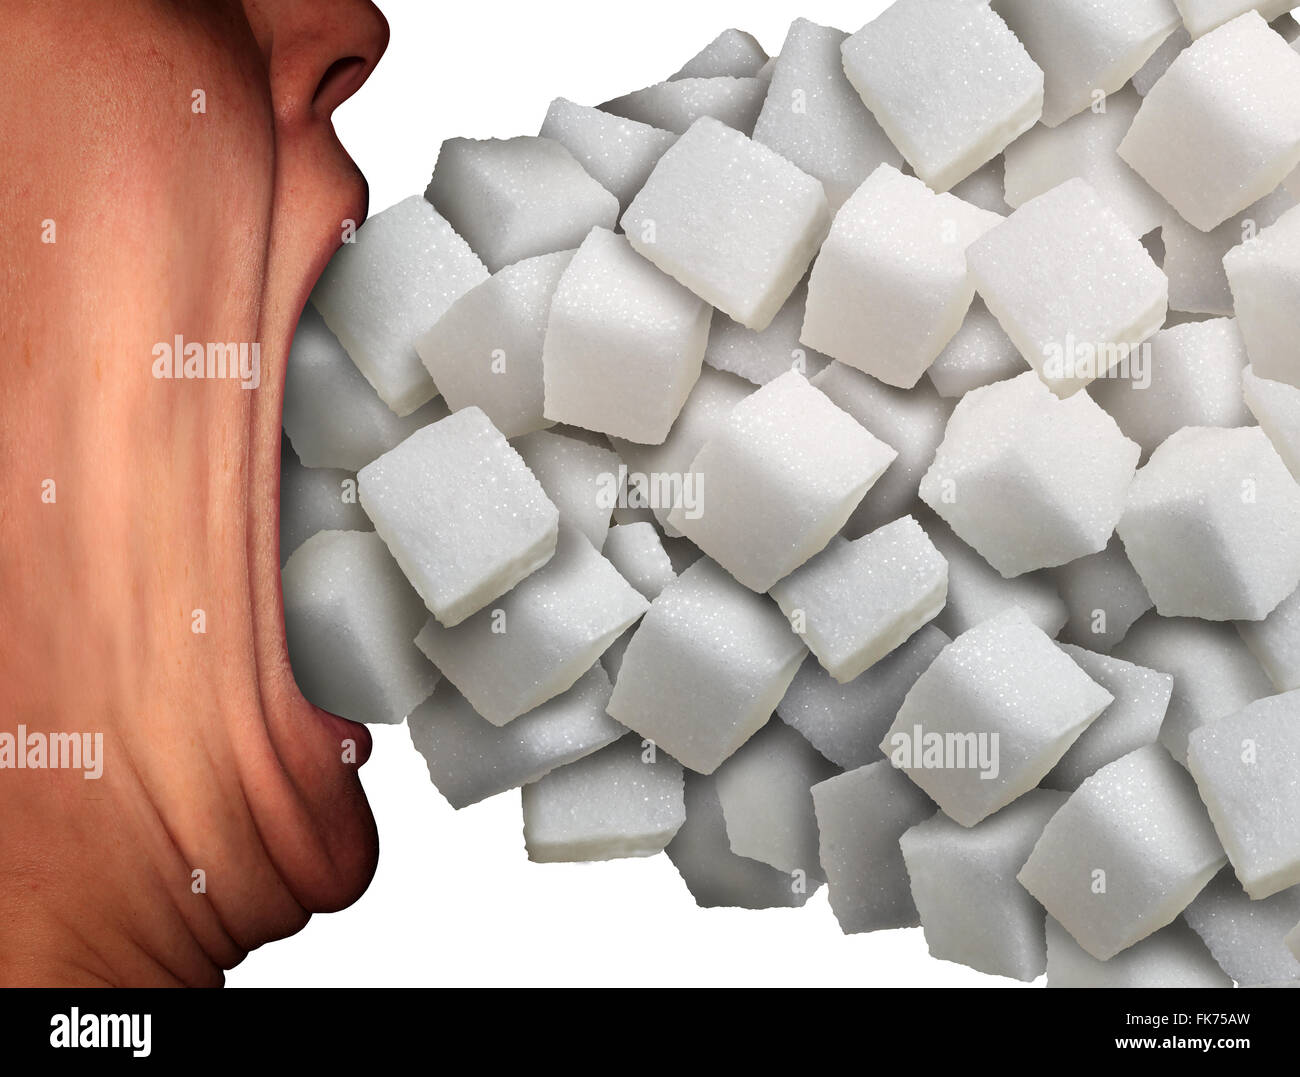 Troppo zucchero concetto medico come una persona con una ampia bocca aperta di mangiare un grande gruppo di dolce raffinato semolato bianco cubetti di zucchero come una metafora per la dieta malsana abitudine o ingrediente alimentare la dipendenza. Foto Stock